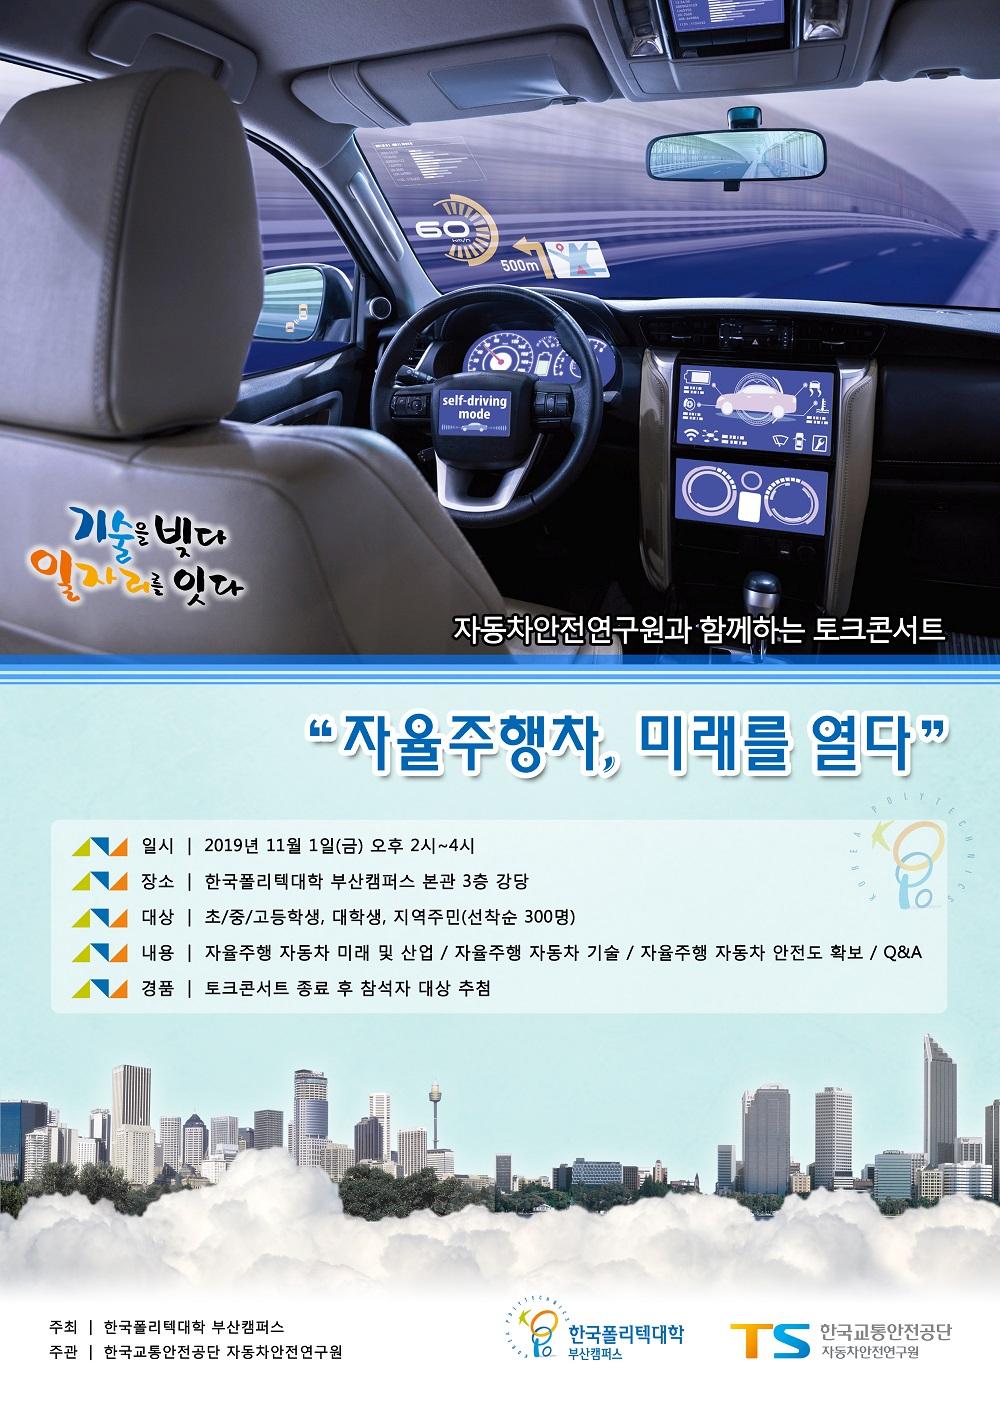 한국폴리텍대학 자동차안전연구원과 함께하는 토크콘서트 자율주행차, 미래를 열다